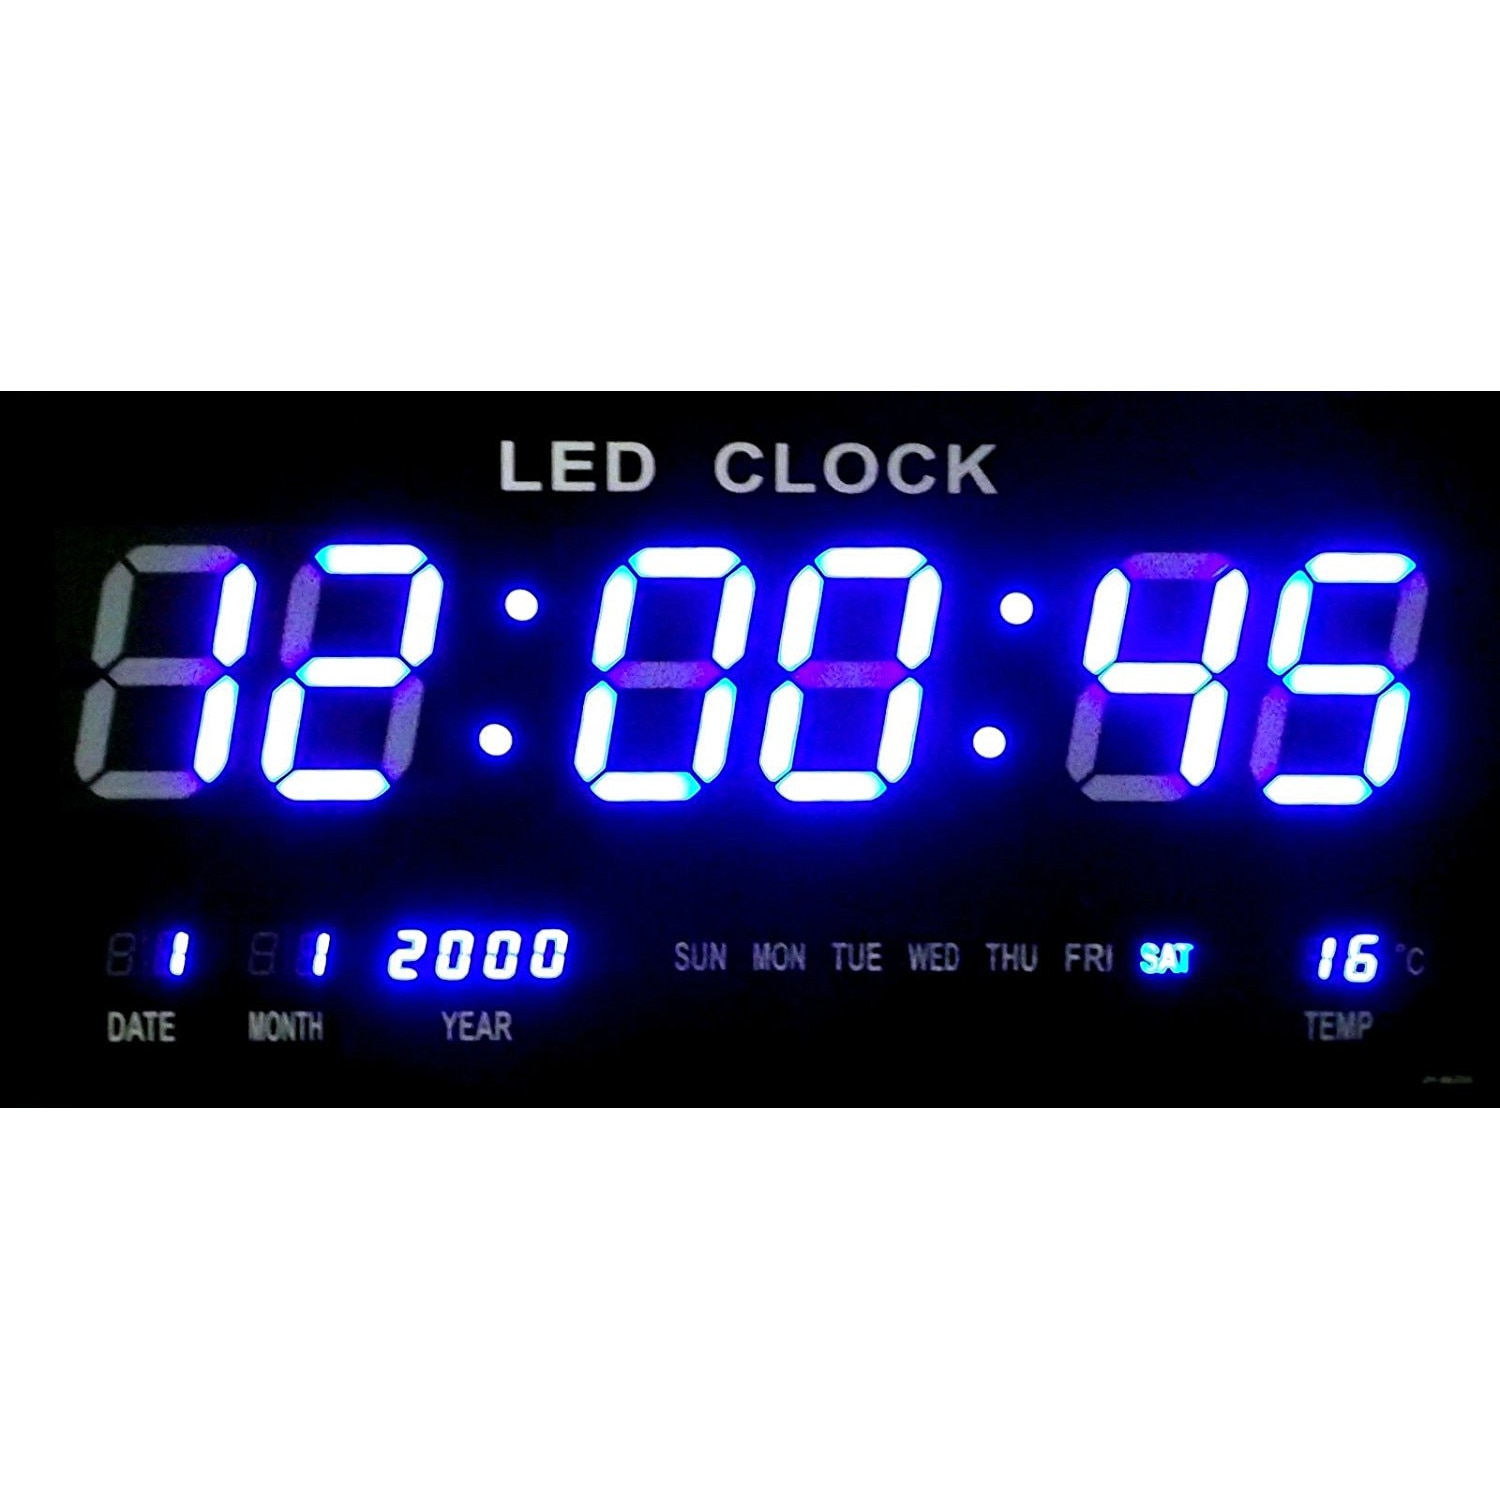 Электронные часы на валберис. Часы VST-739/2 настенные электронные зеленые. Часы led Clock 4622. Настенные электронные часы led 4622 комплект. Часы настенные Digital led Clock.